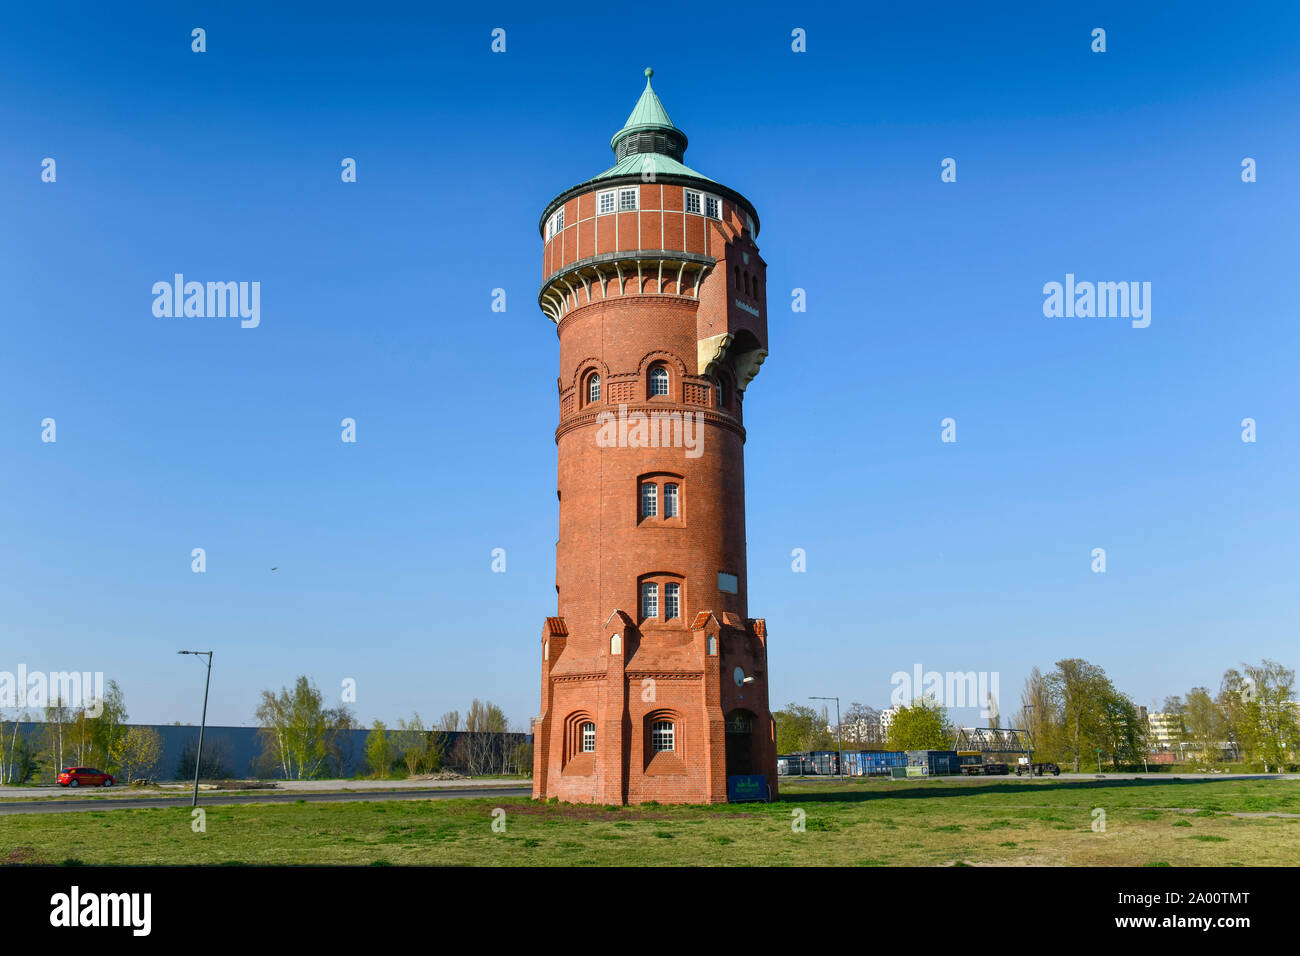 Alter Wasserturm, Marienpark, Lankwitzer Strasse, Mariendorf, Tempelhof-Schoeneberg, Berlin, Deutschland Banque D'Images